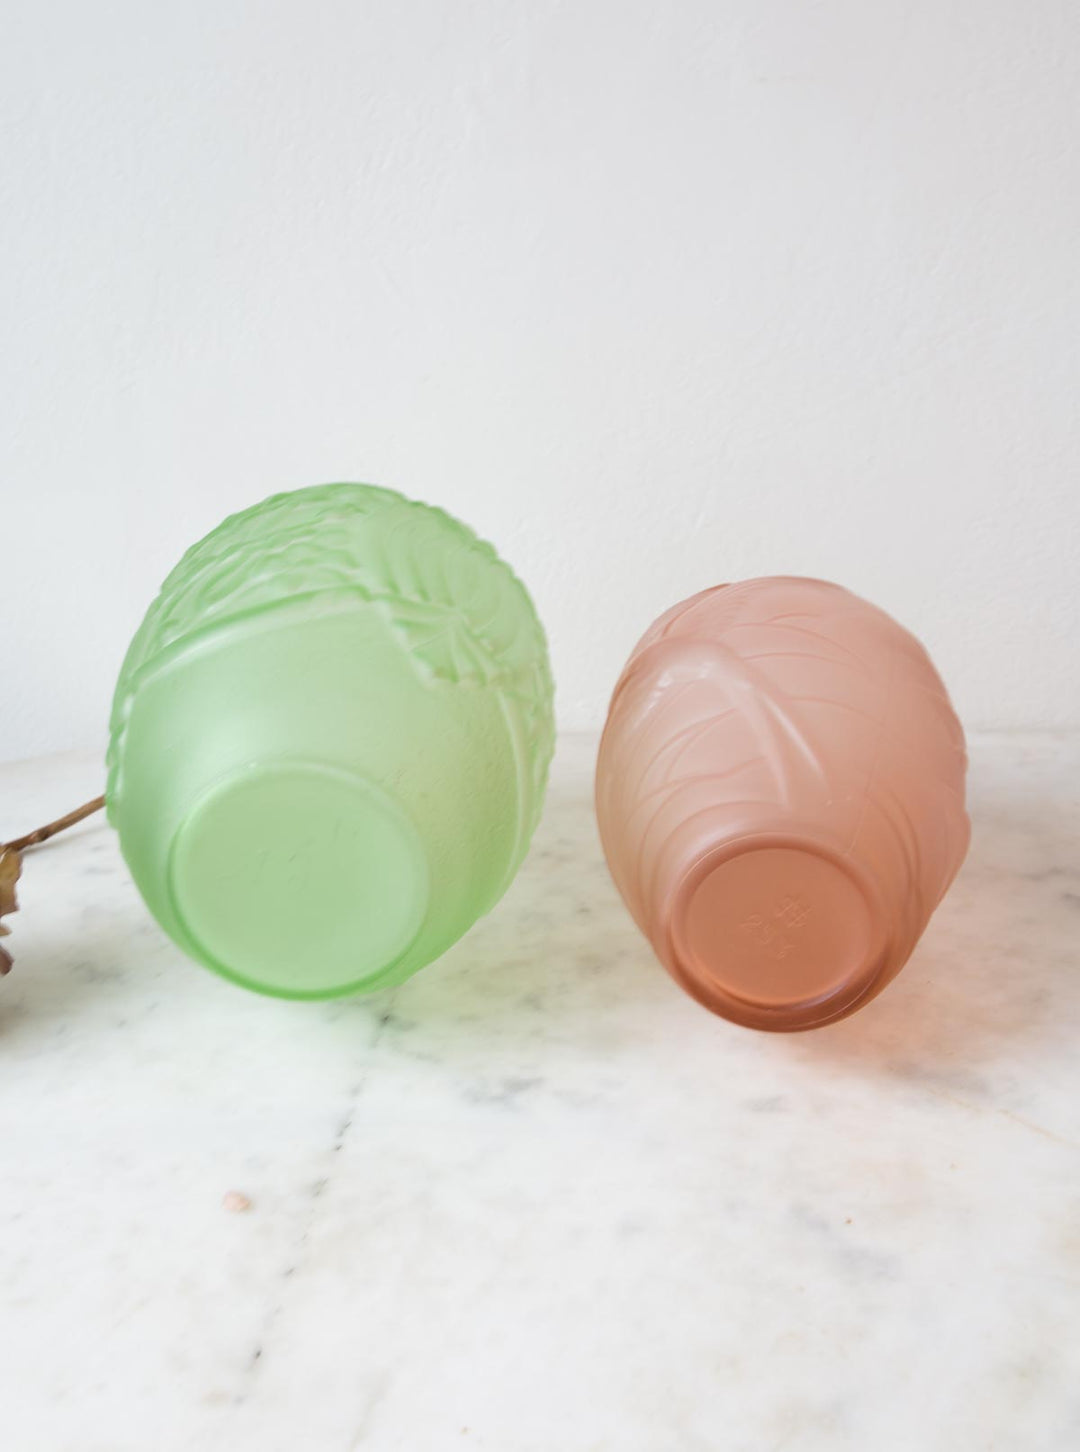 Pareja jarrones art decó franceses años 20/30 rosa y verde vases